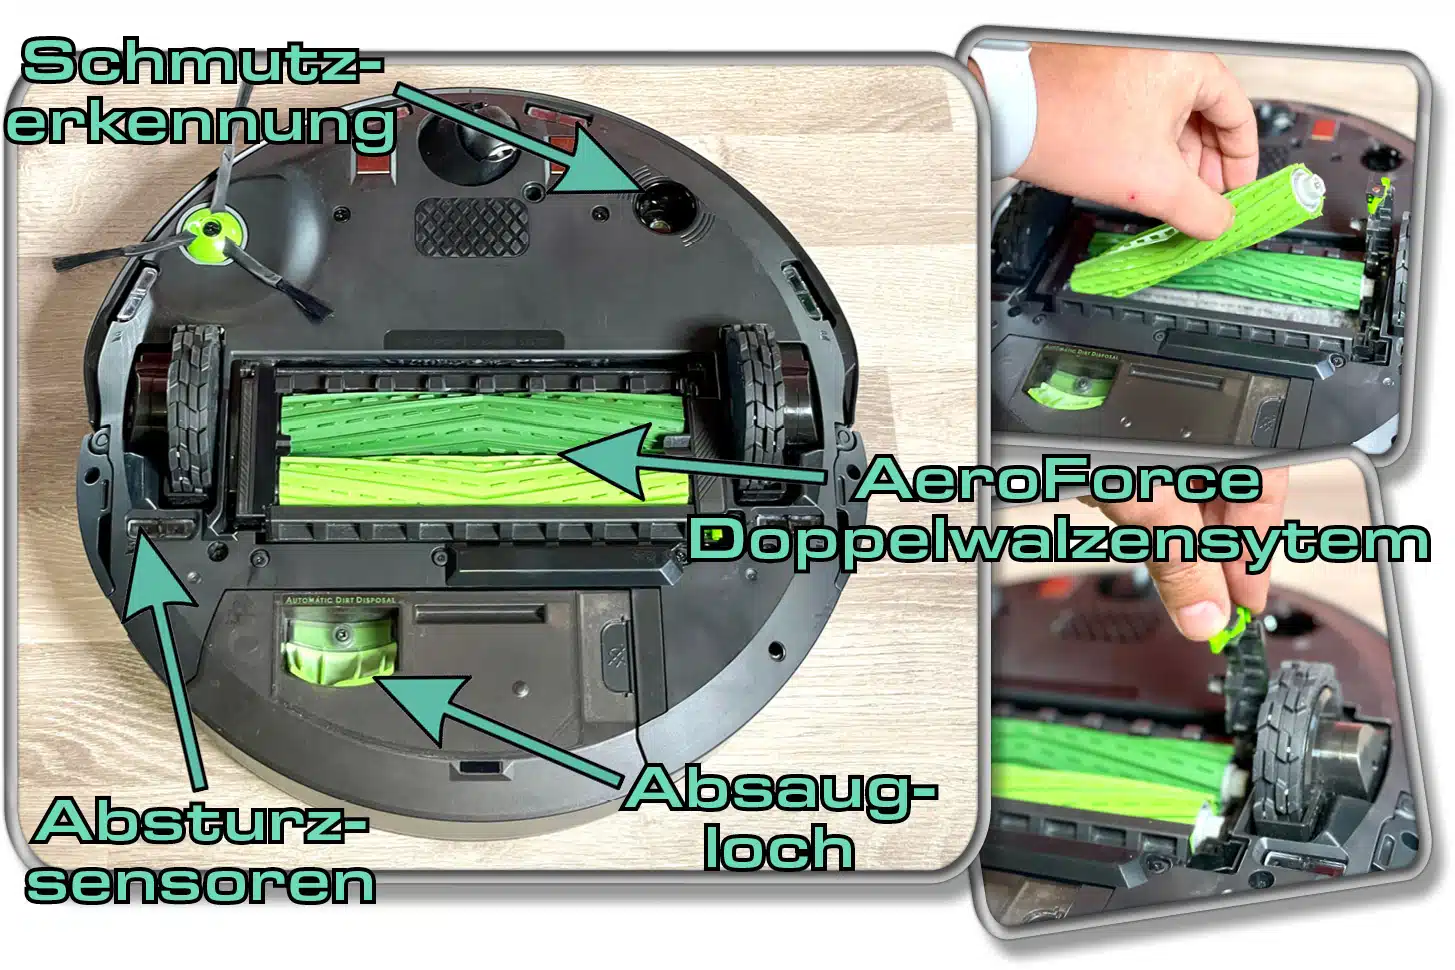 Ein Doppelwalzensystem namens AeroForce findet man auf der Unterseite des iRobot Roomba Combo j7+